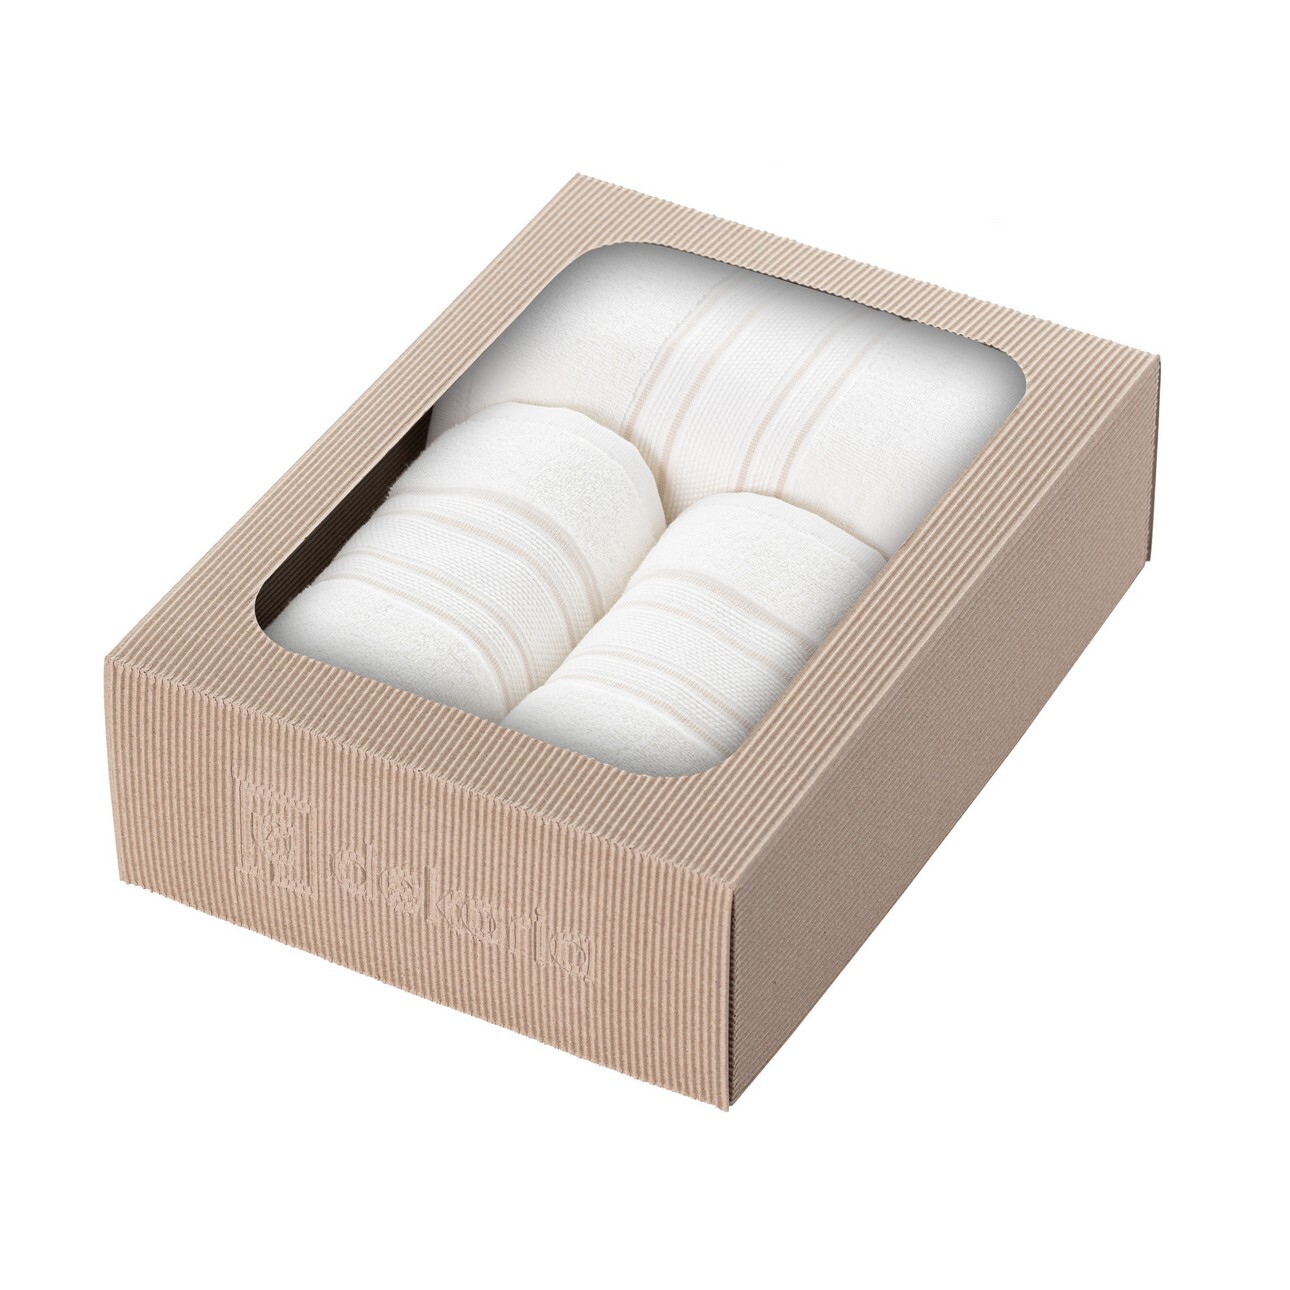 Handtuch-Set Gunnar 3 Stck. creamy white beige, 50 x 90 / 70 x 140 cm günstig online kaufen